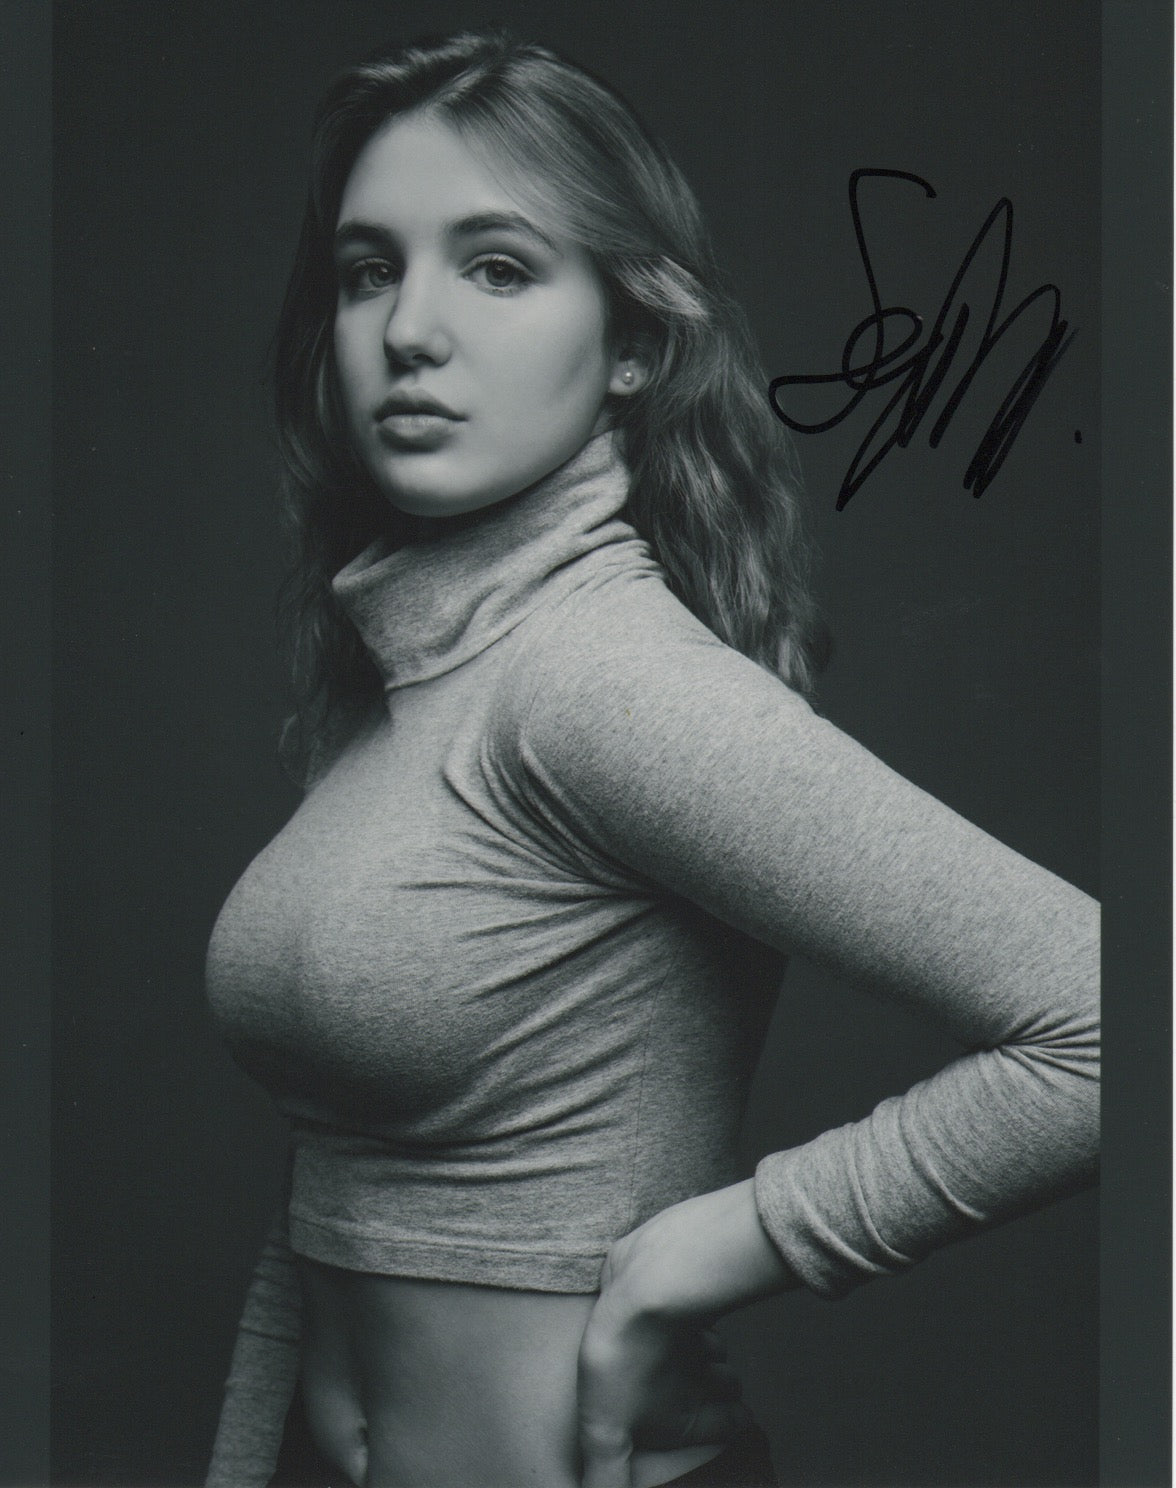 Sophie Nelisse Signed Autograph 8x10 Photo #4 - Outlaw Hobbies Authentic Autographs